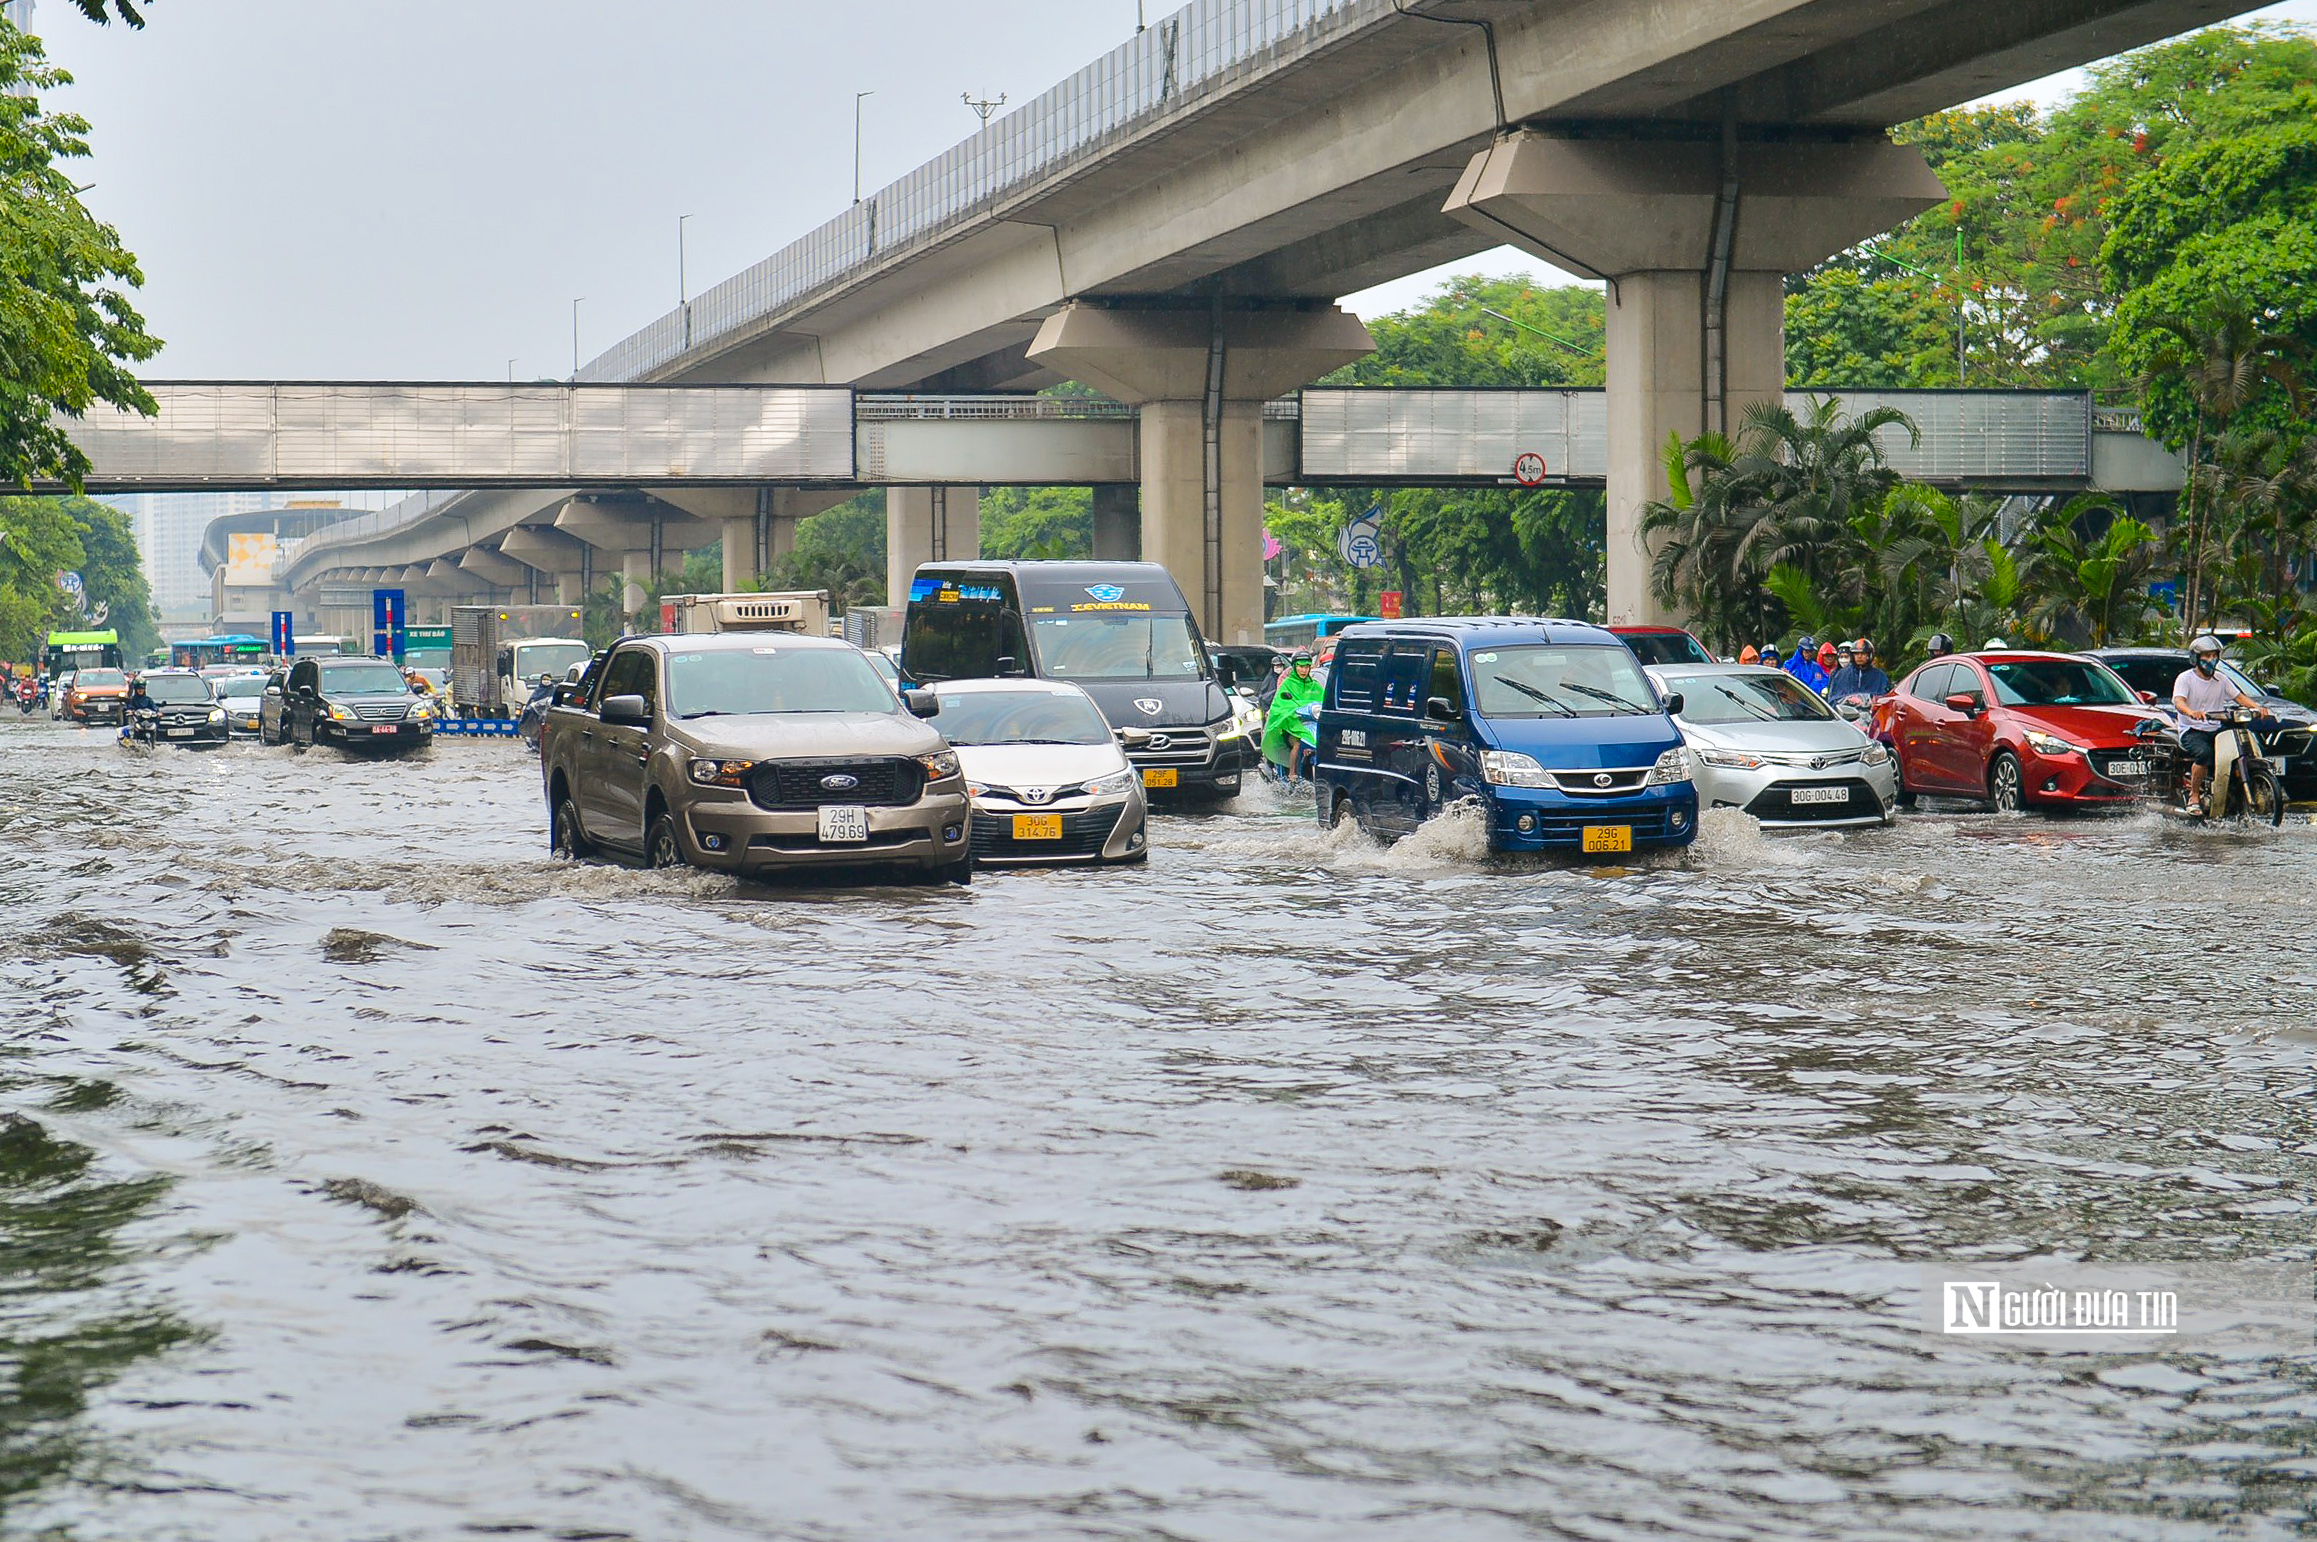 Dân sinh - Cơn mưa lớn bất chợt giữa trưa khiến đường phố Hà Nội ngập sâu (Hình 6).